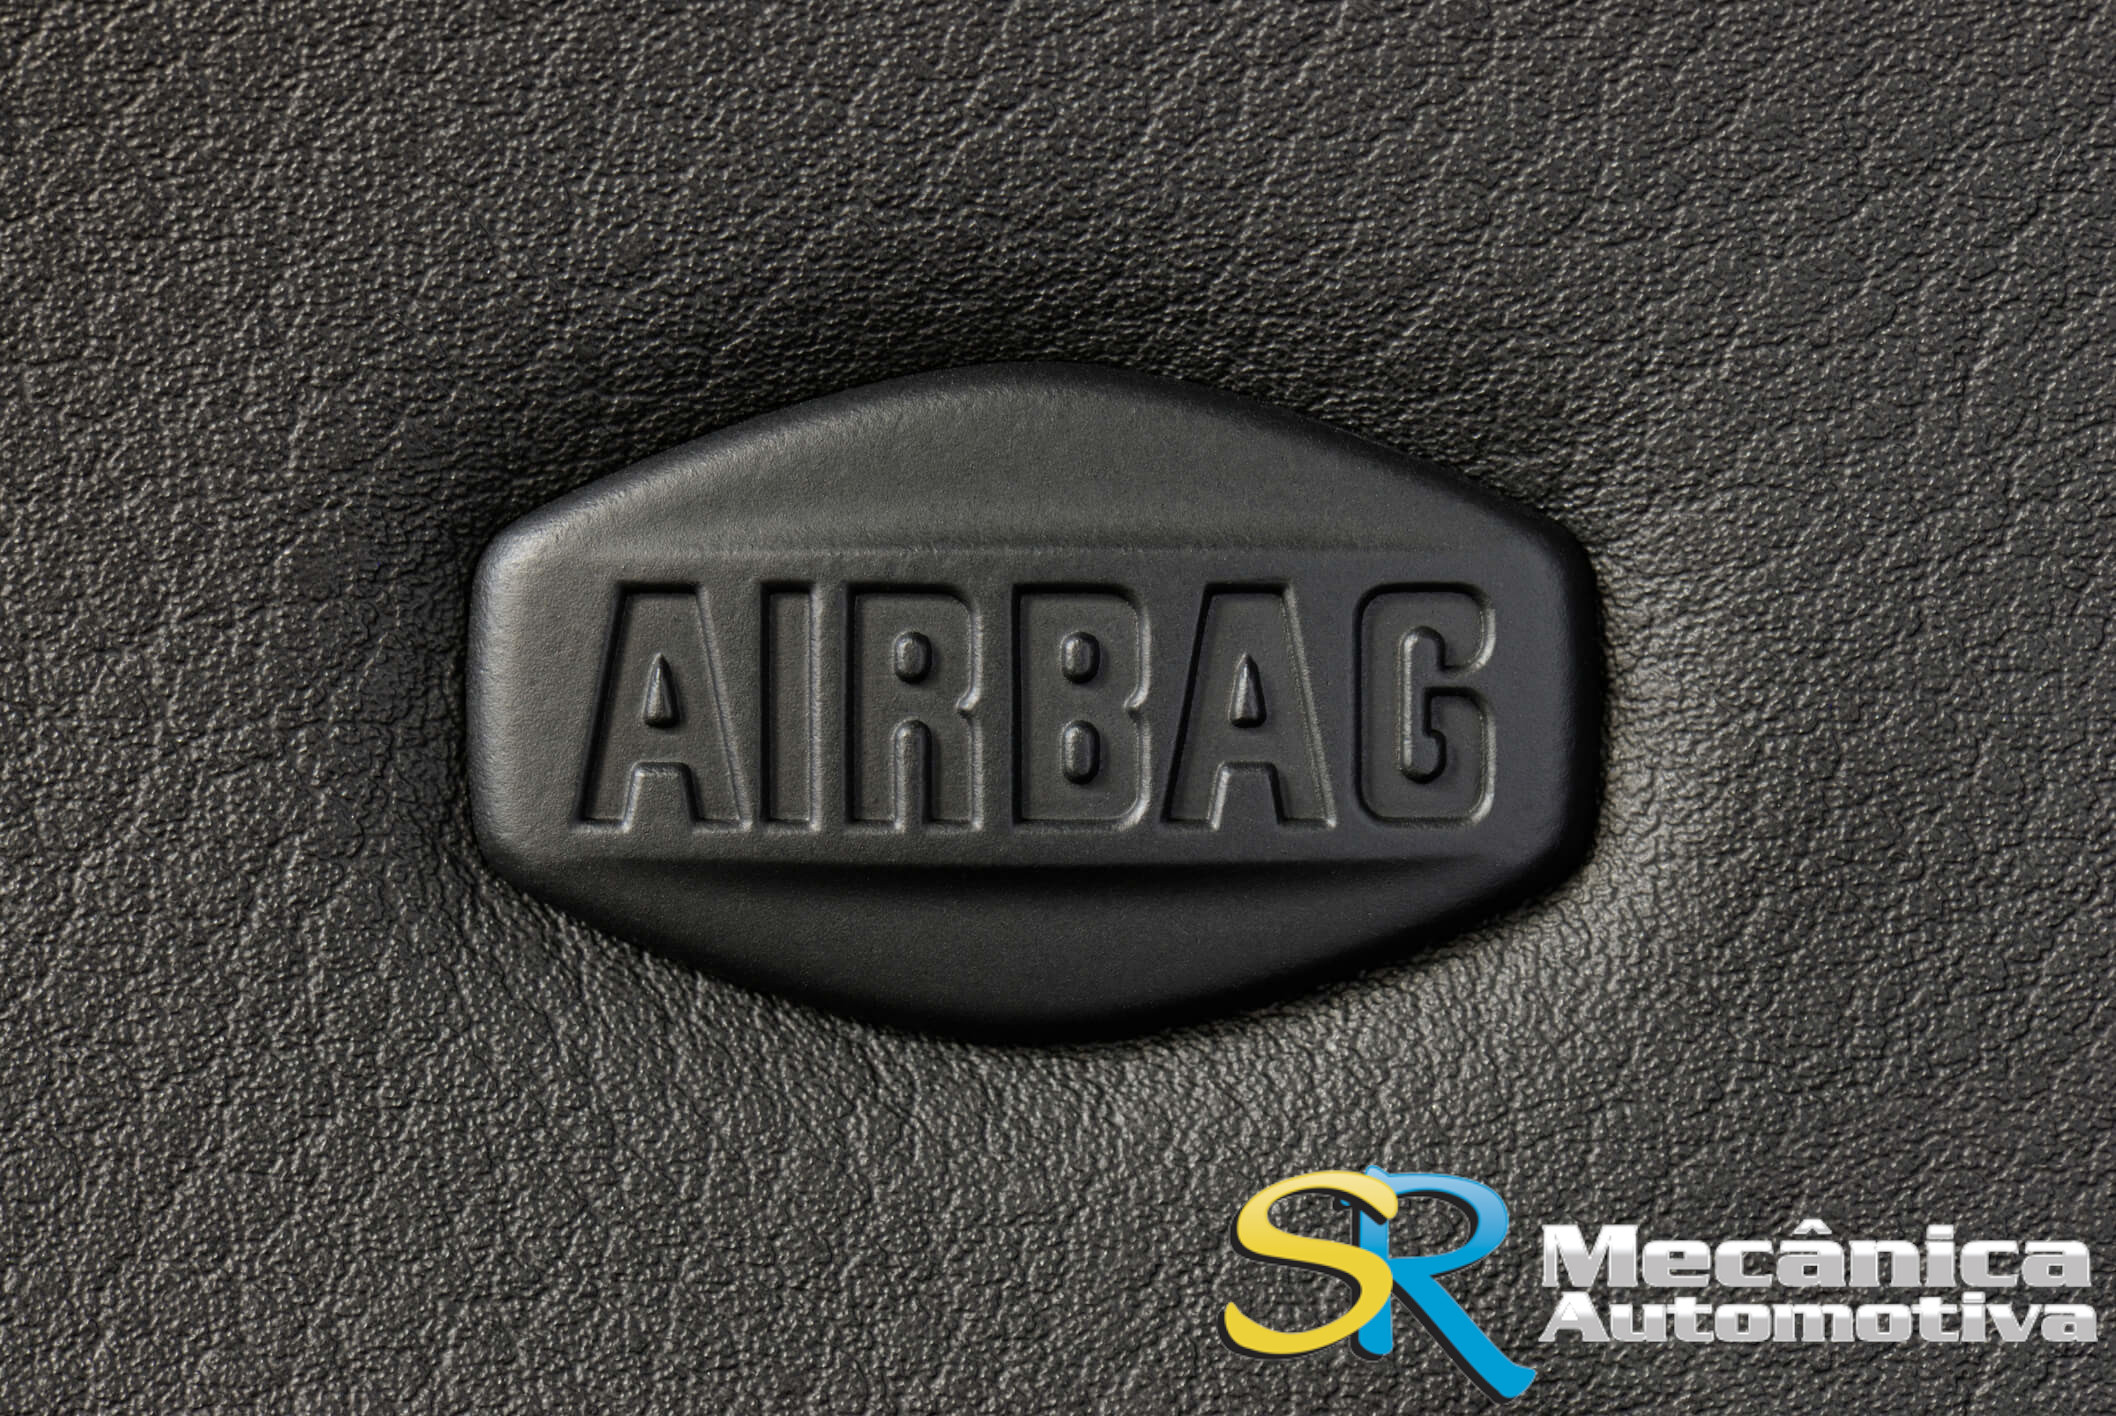 Como Funcionam os Airbags?